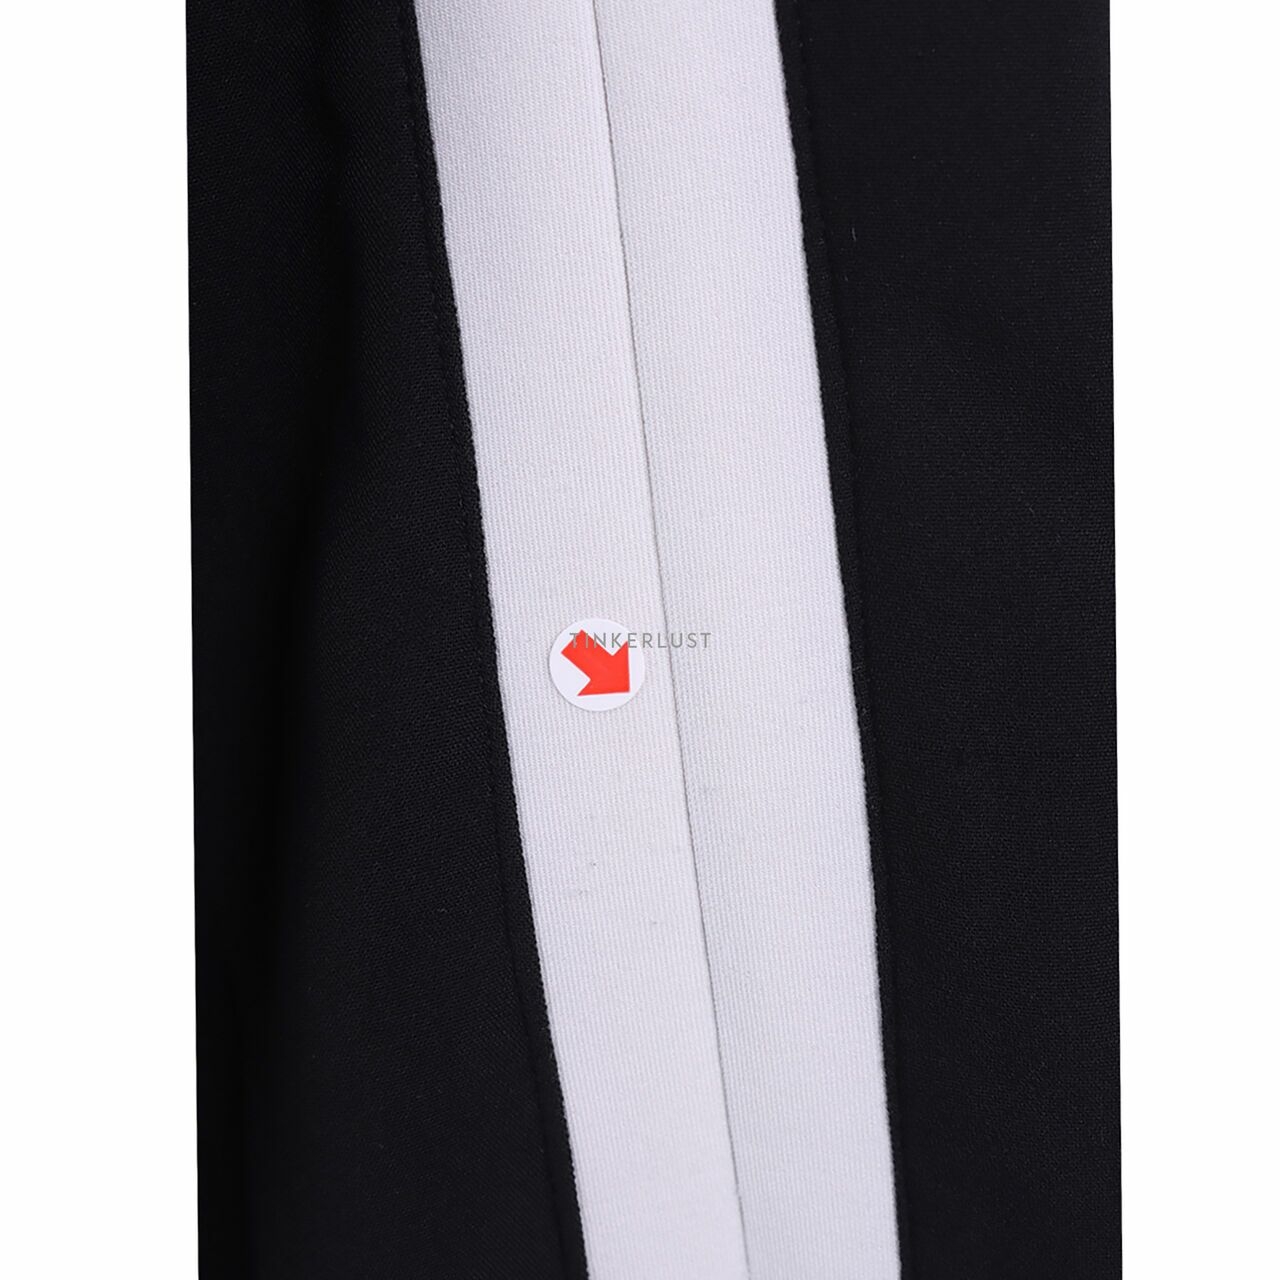 Label Eight Black Stripes White Long Pants